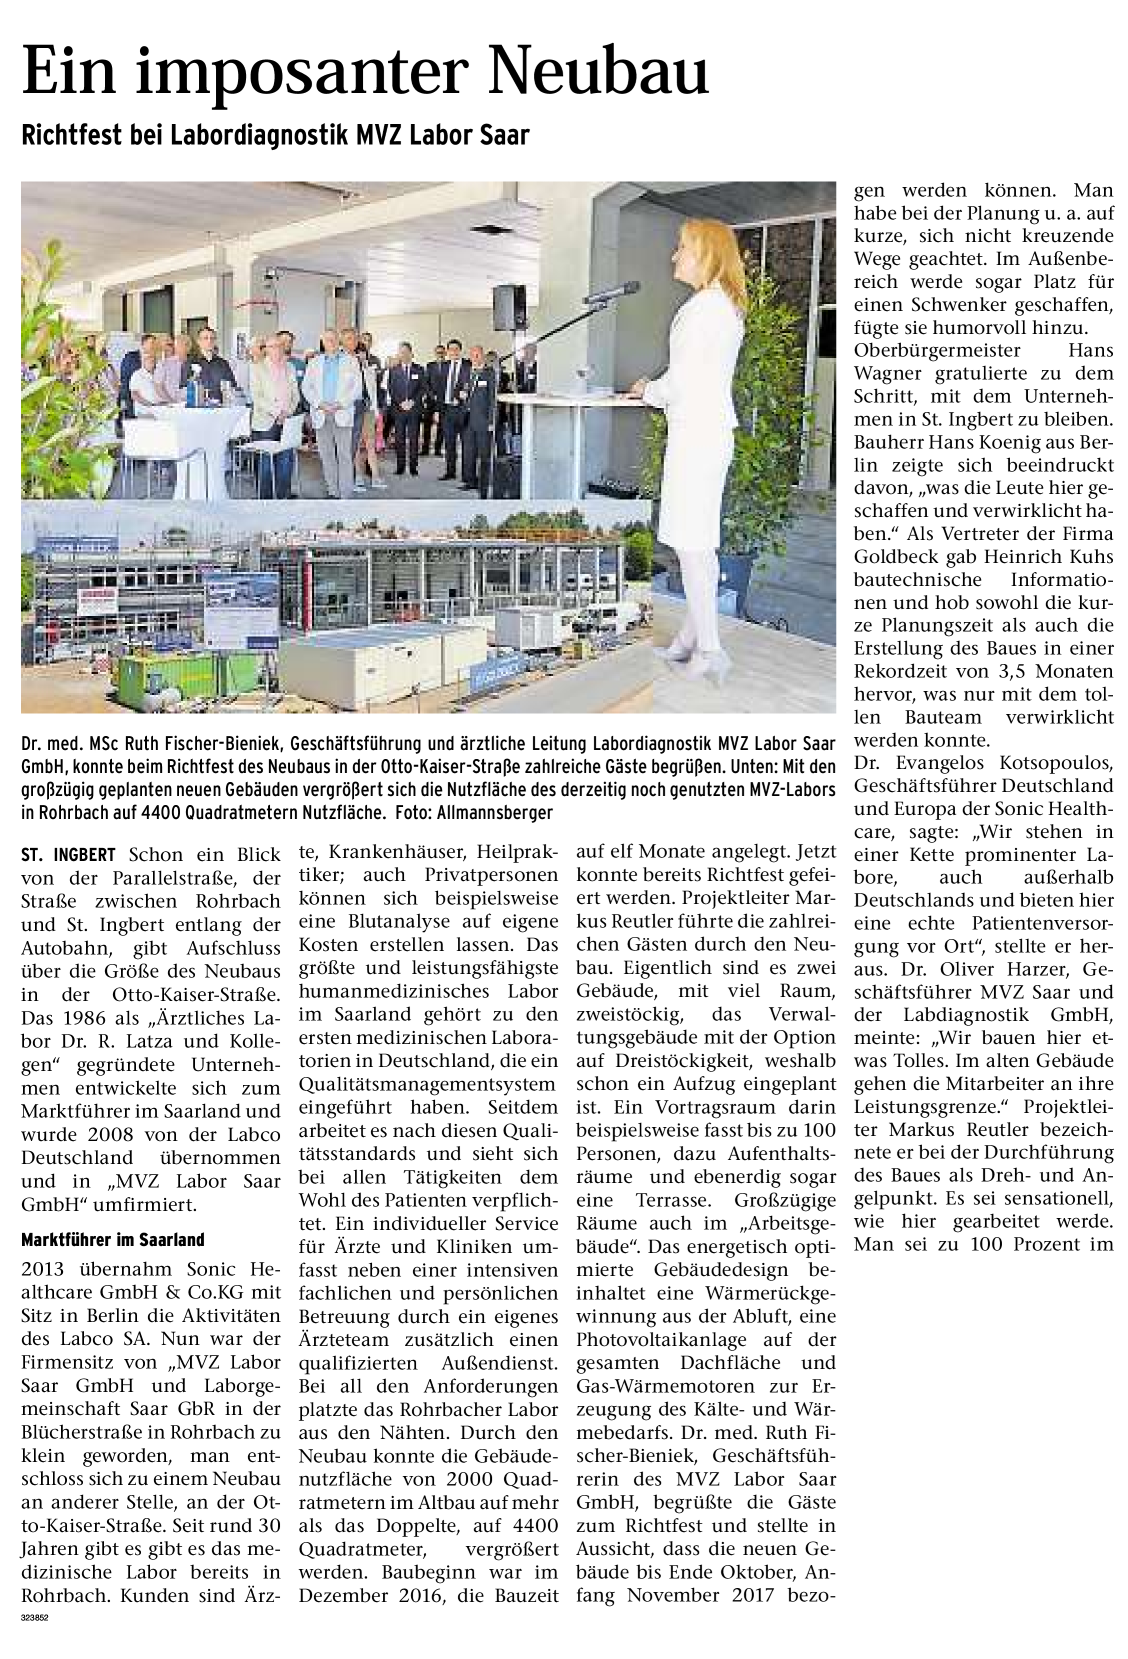 Große Fortschritte beim Neubau des MVZ Labor Saar. Der Wochenspiegel berichtet über das Richtfest.